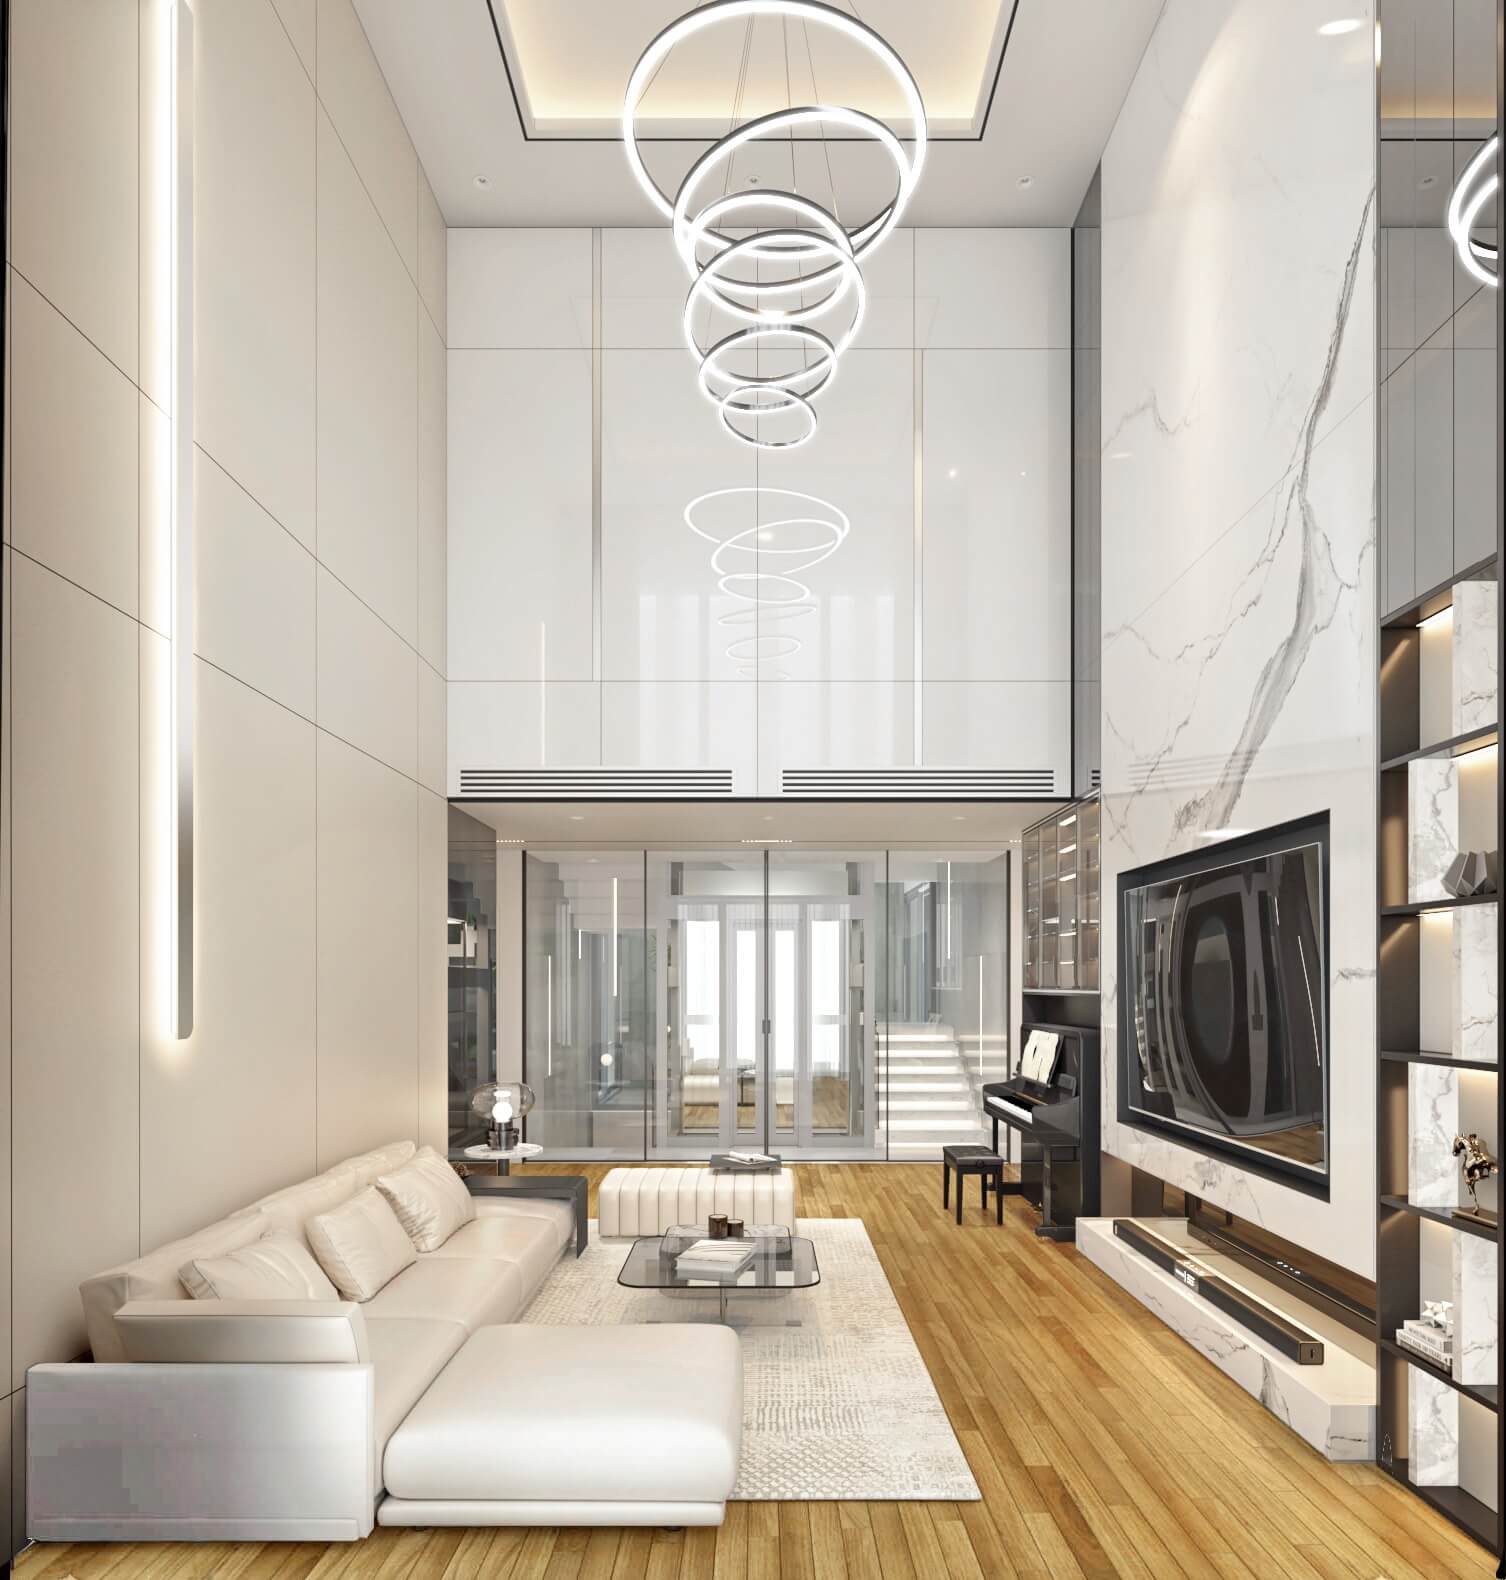 Thiết kế nội thất biệt thự hiện đại Tạo ra không gian sống hiện đại, thông thoáng và tiện nghi